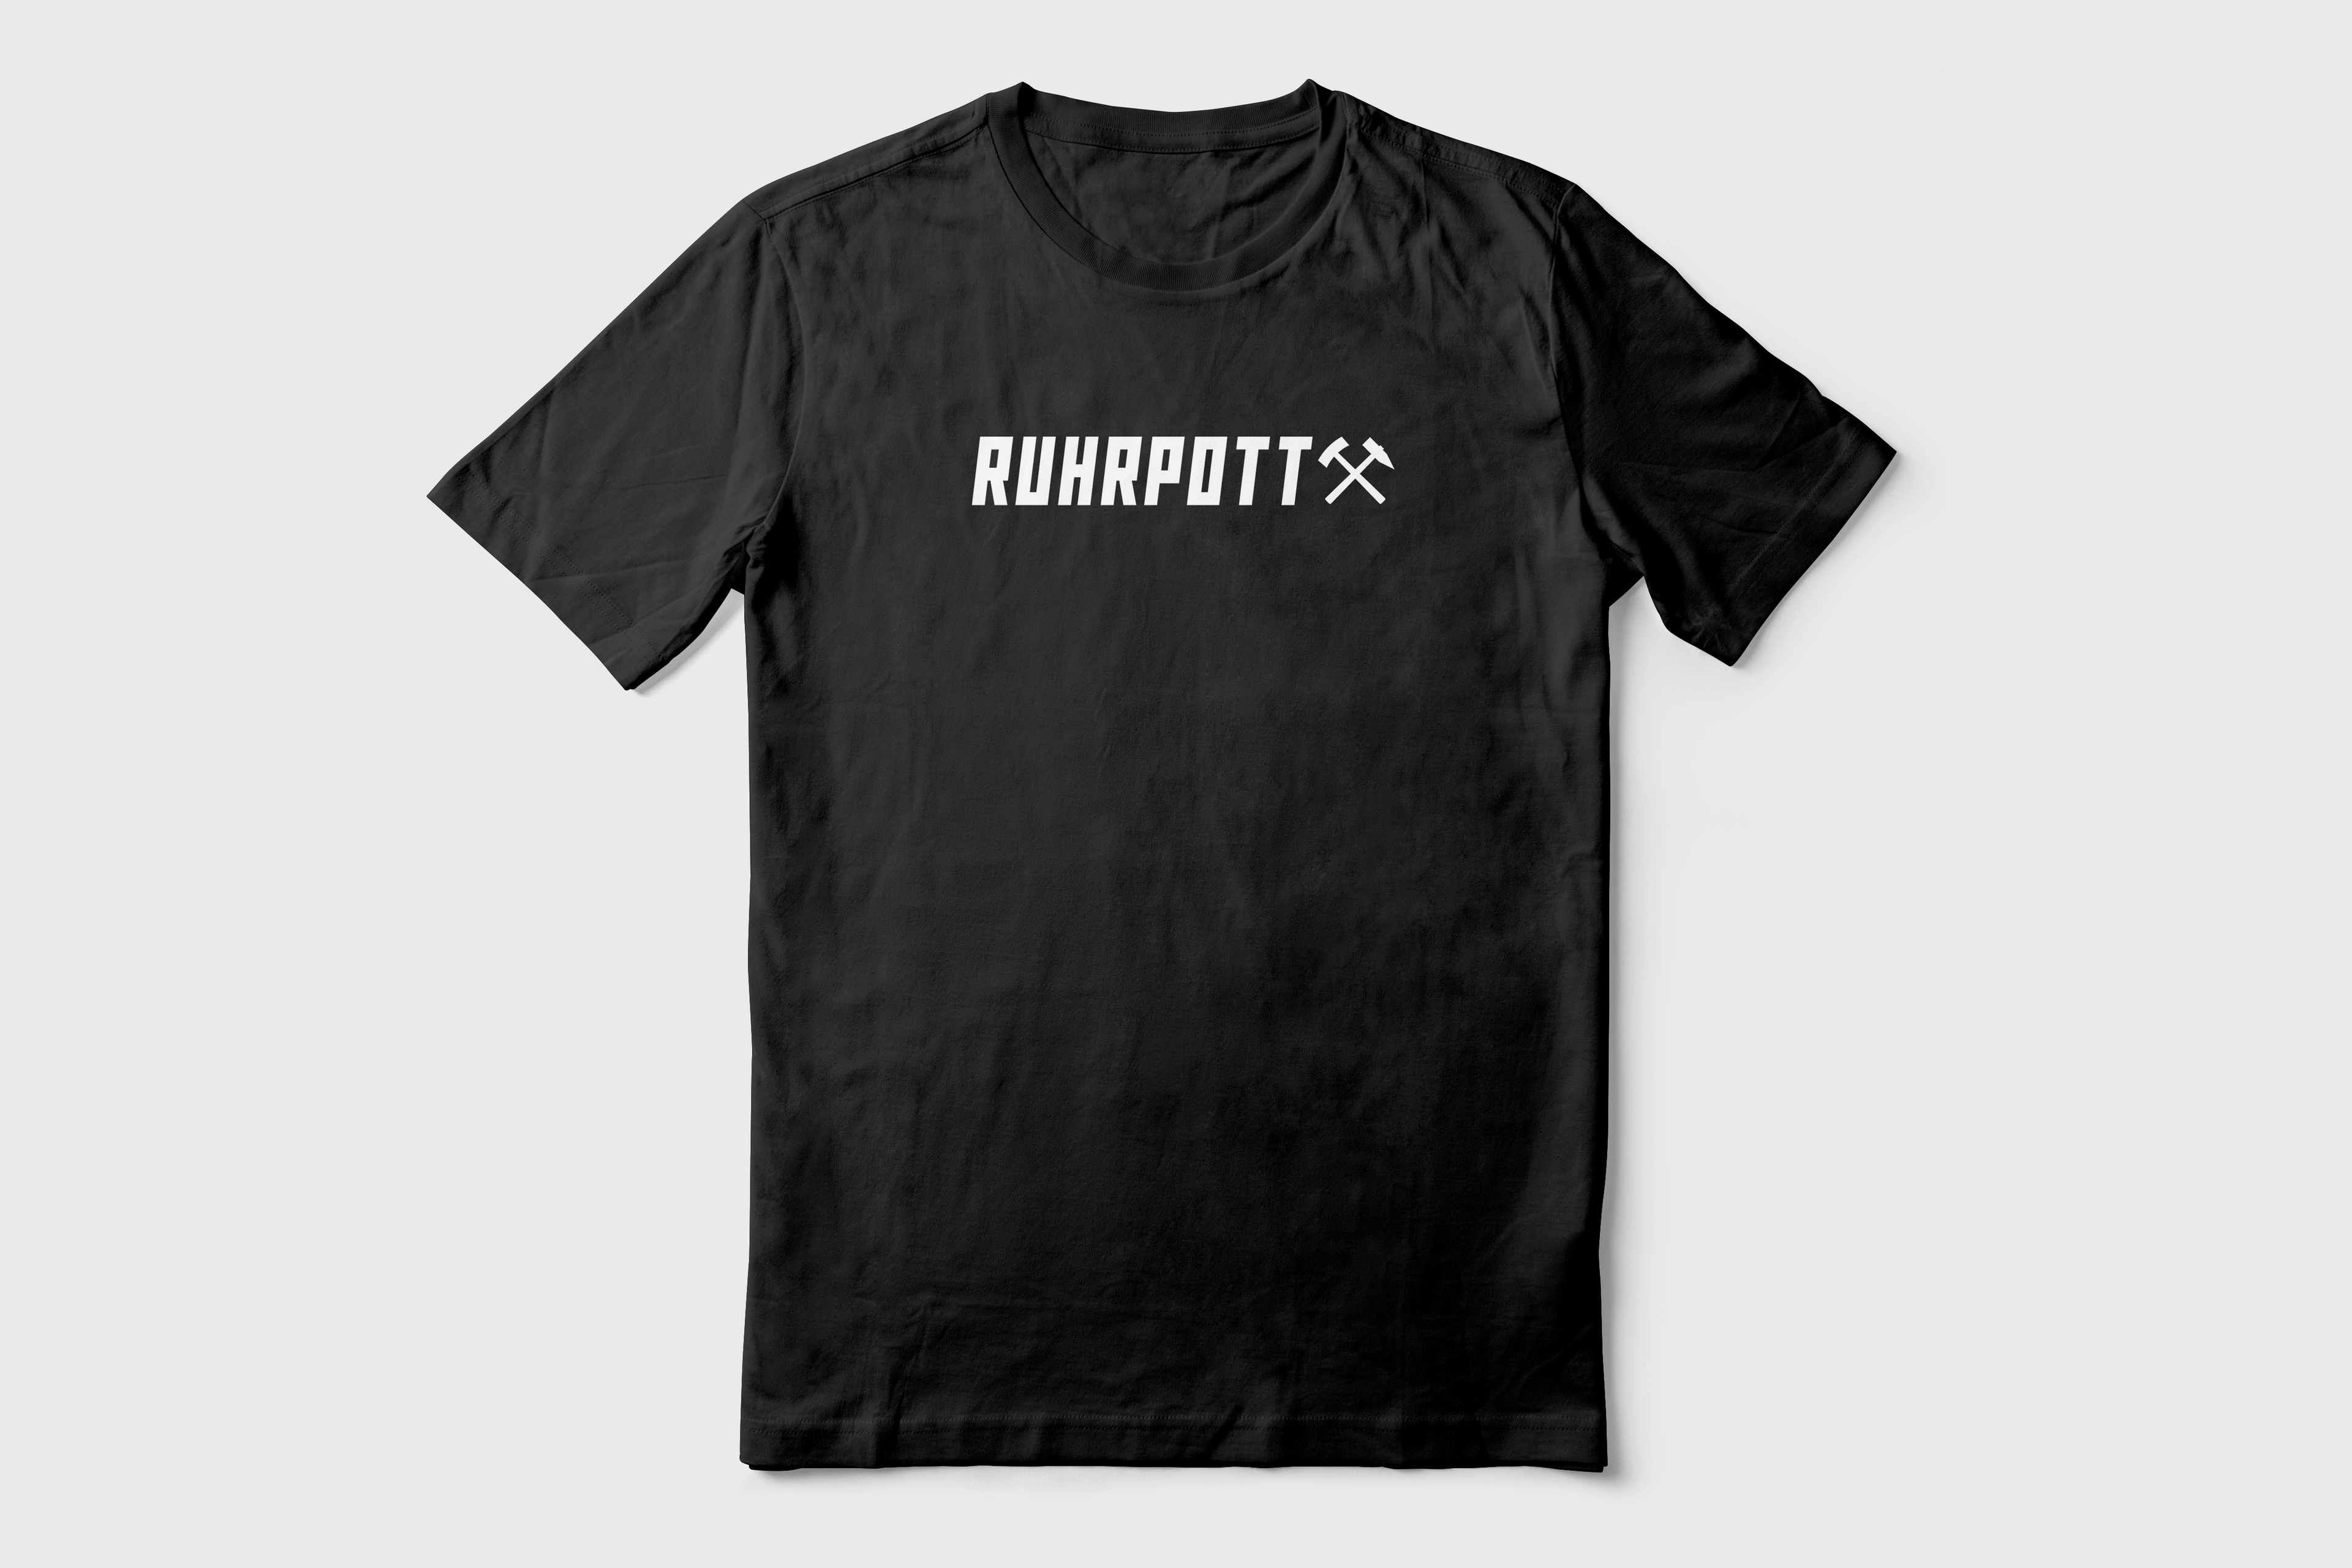 Ruhrpott T-Shirt